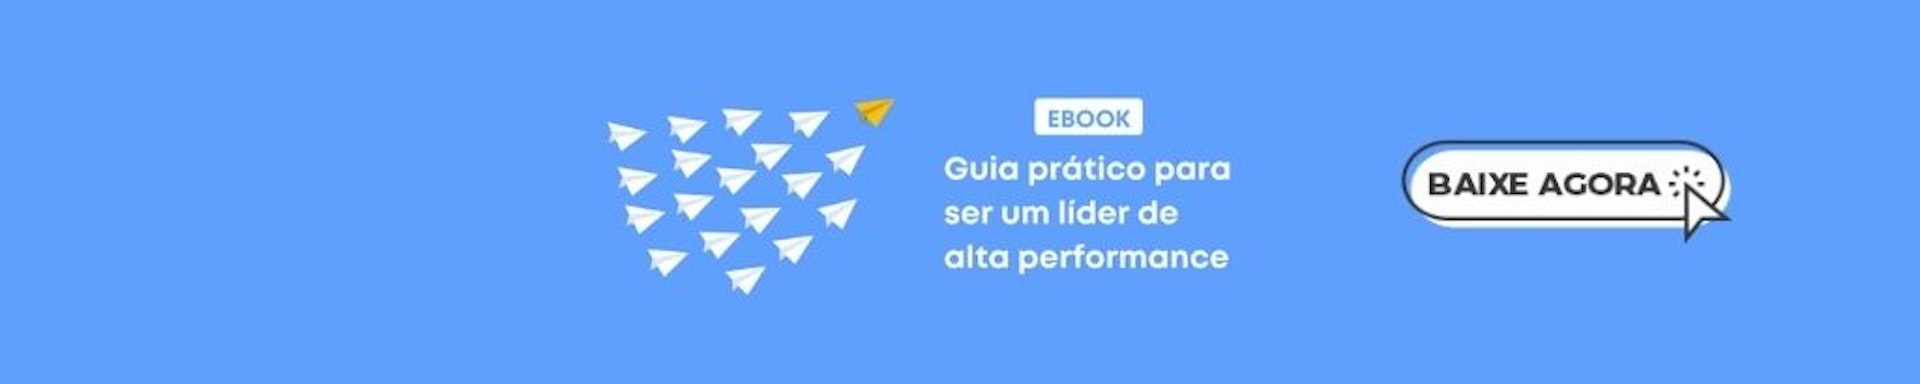 Banner do ebook Guia prático para ser um líder de alta performance.